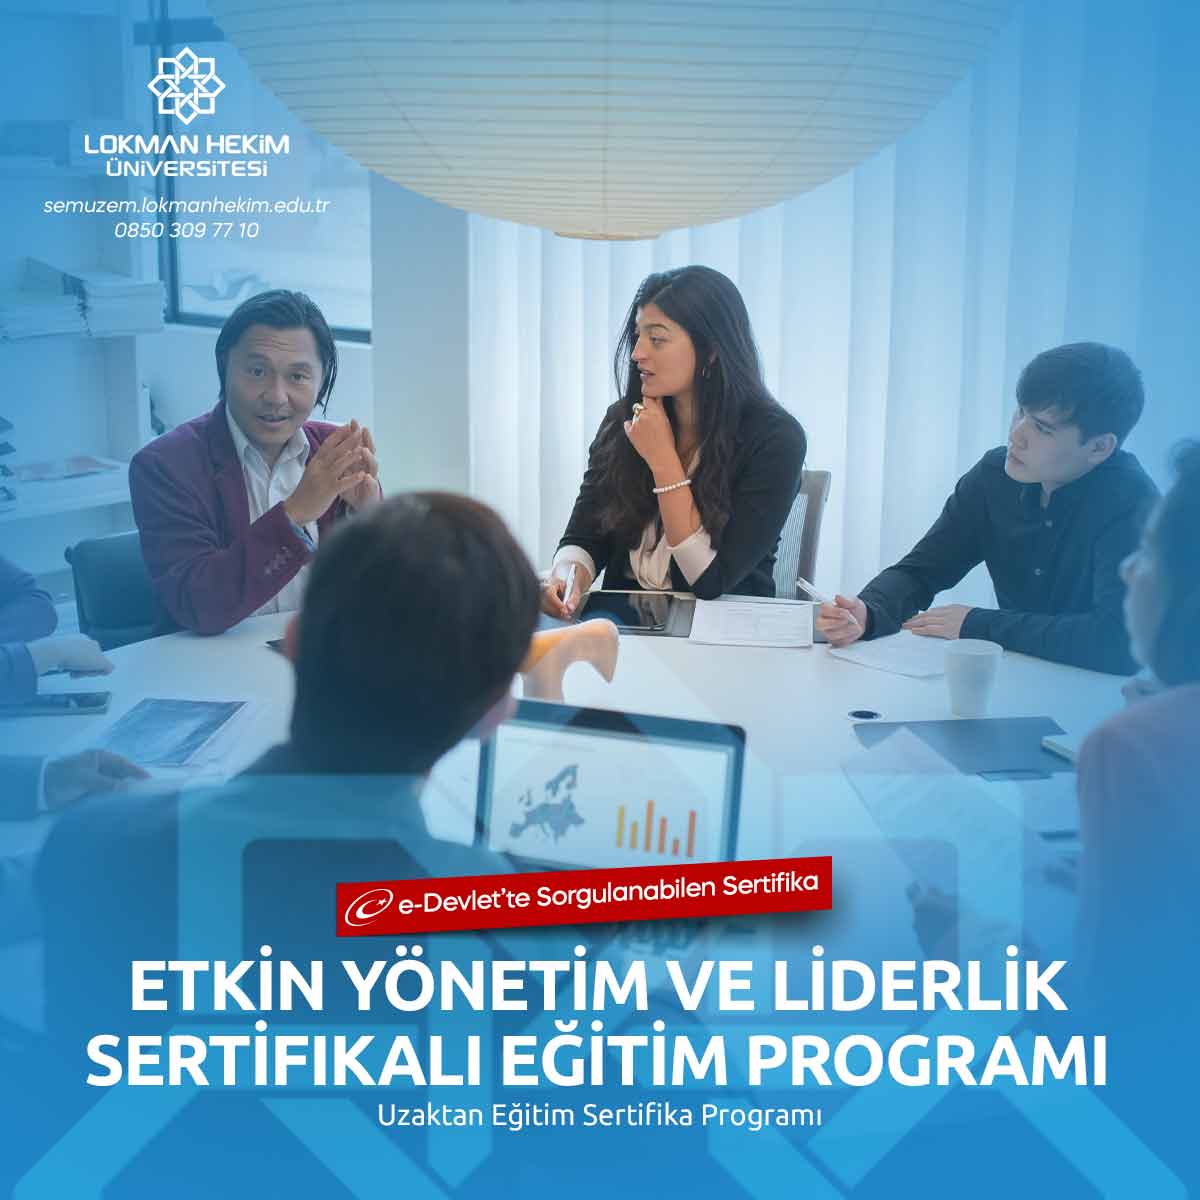 Etkin Yönetim ve Liderlik Sertifikalı Eğitim Programı